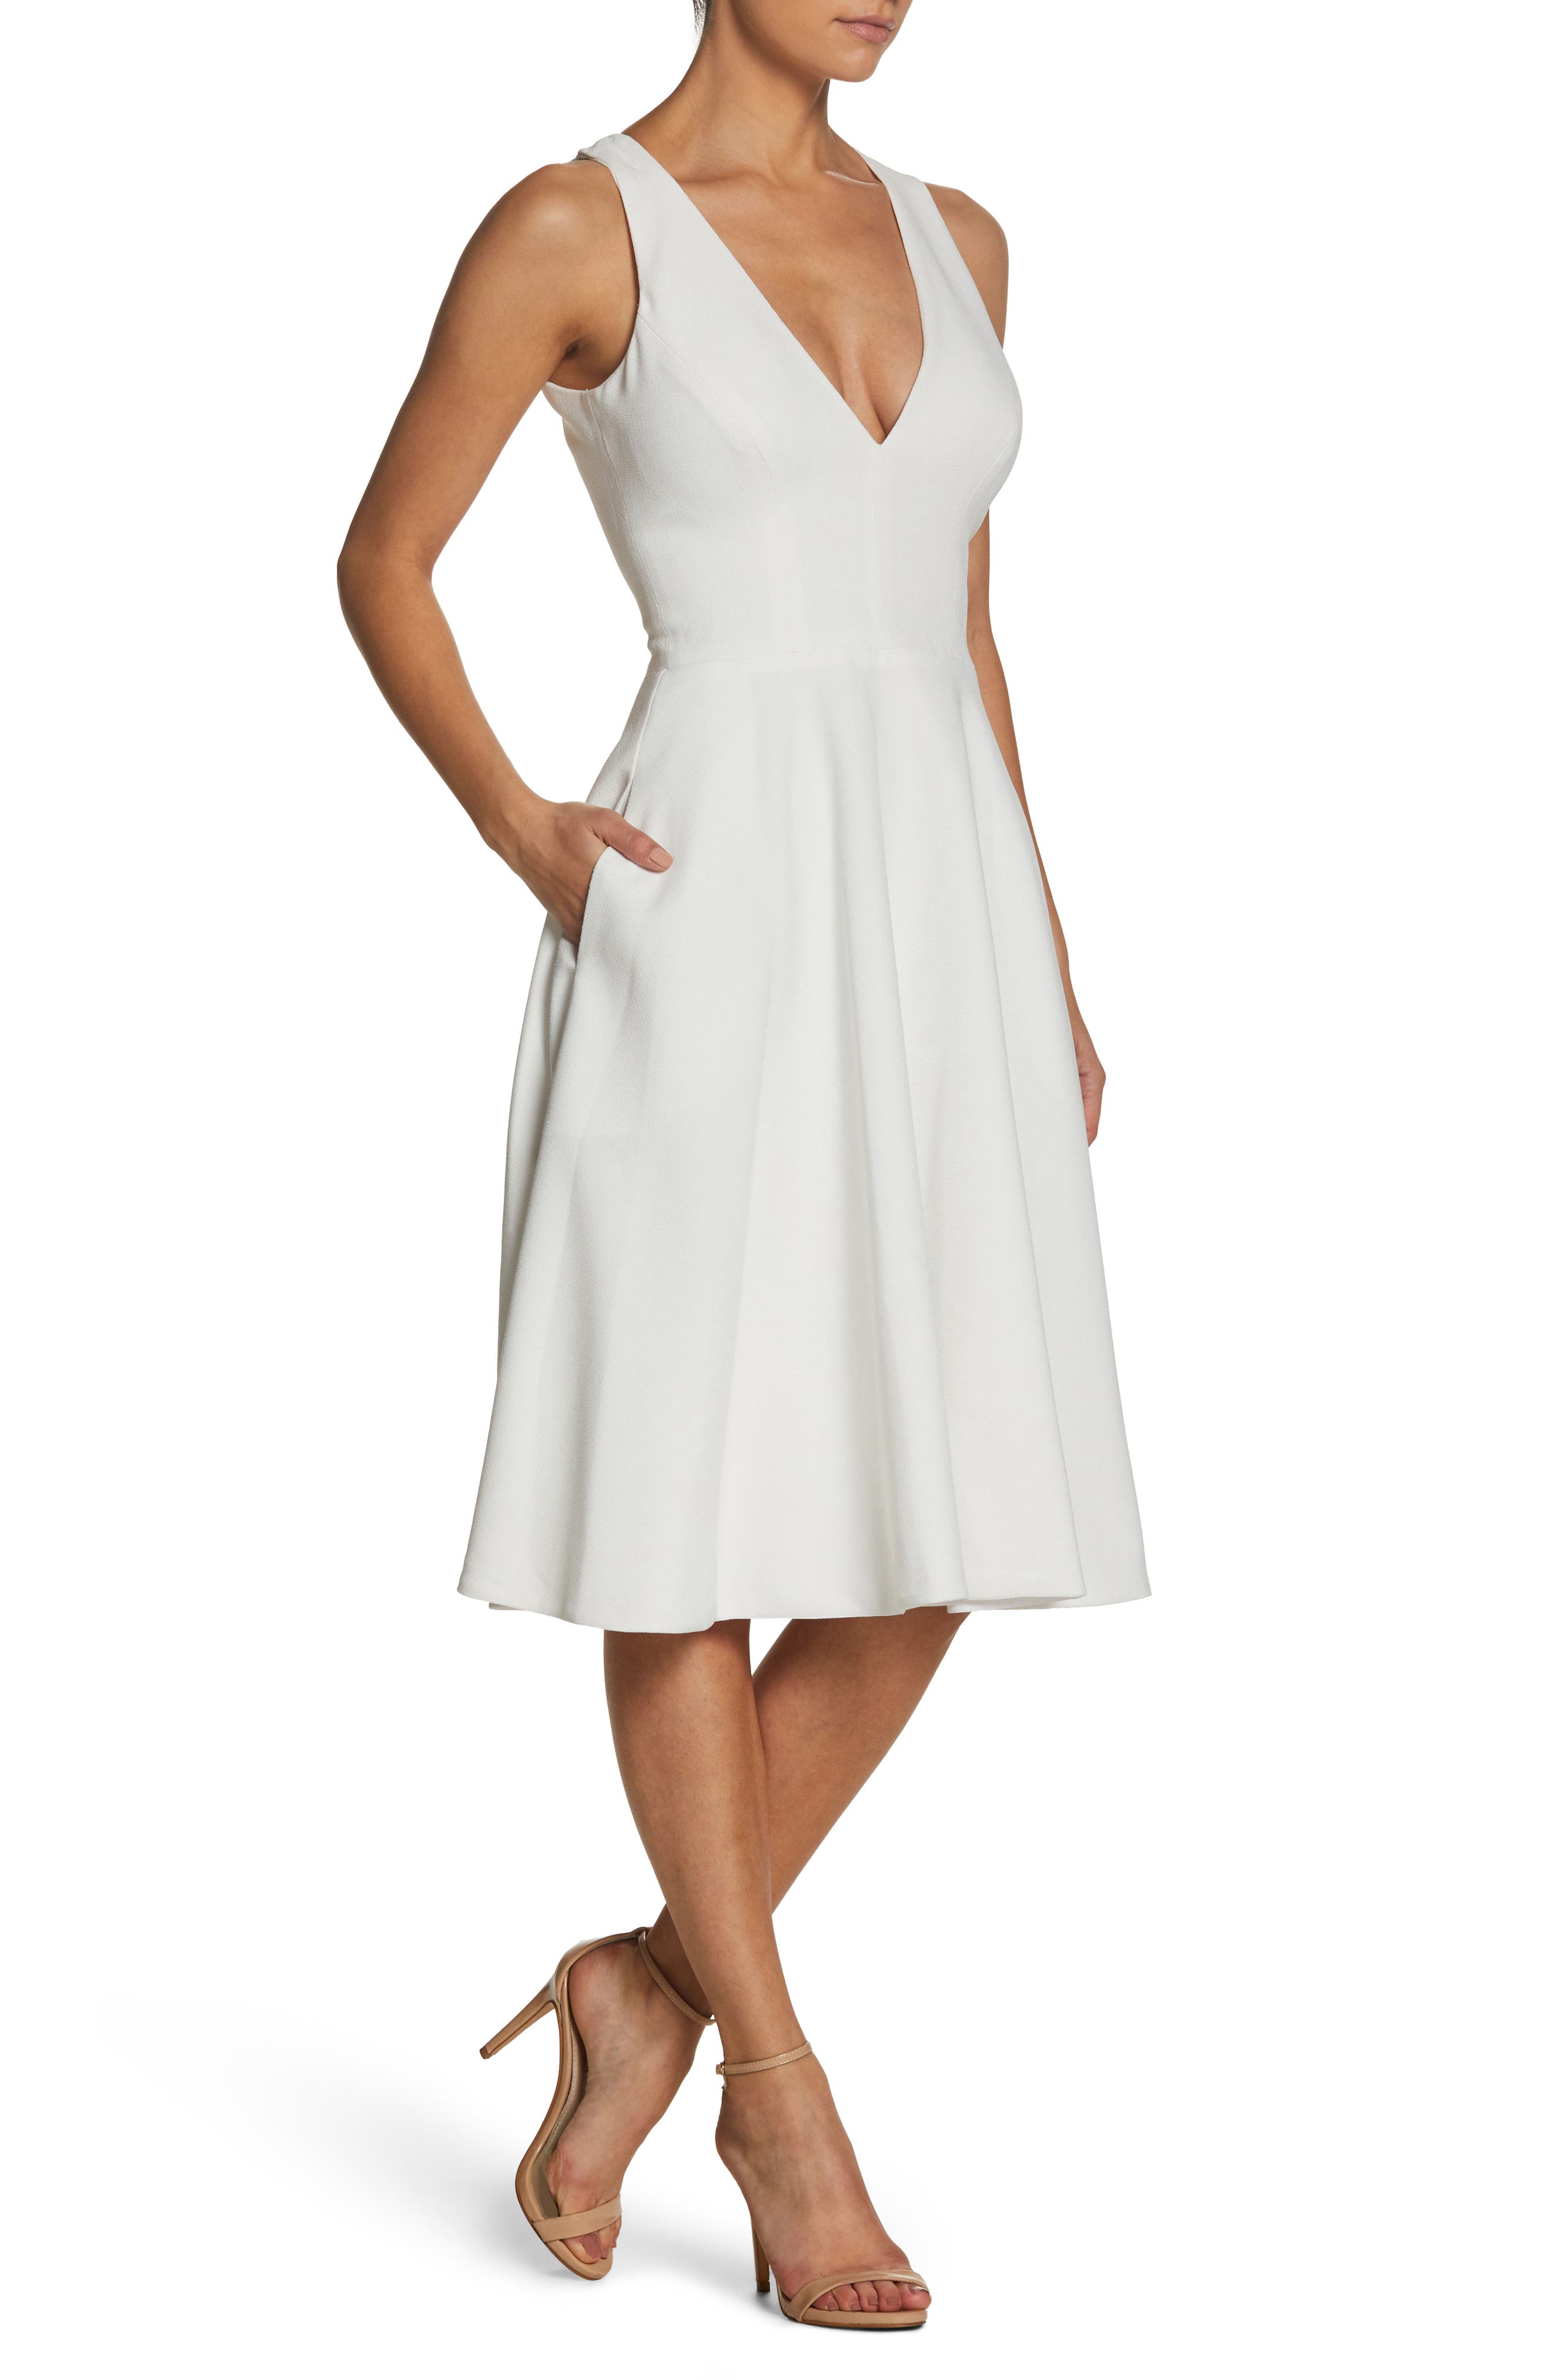 white knee length dress